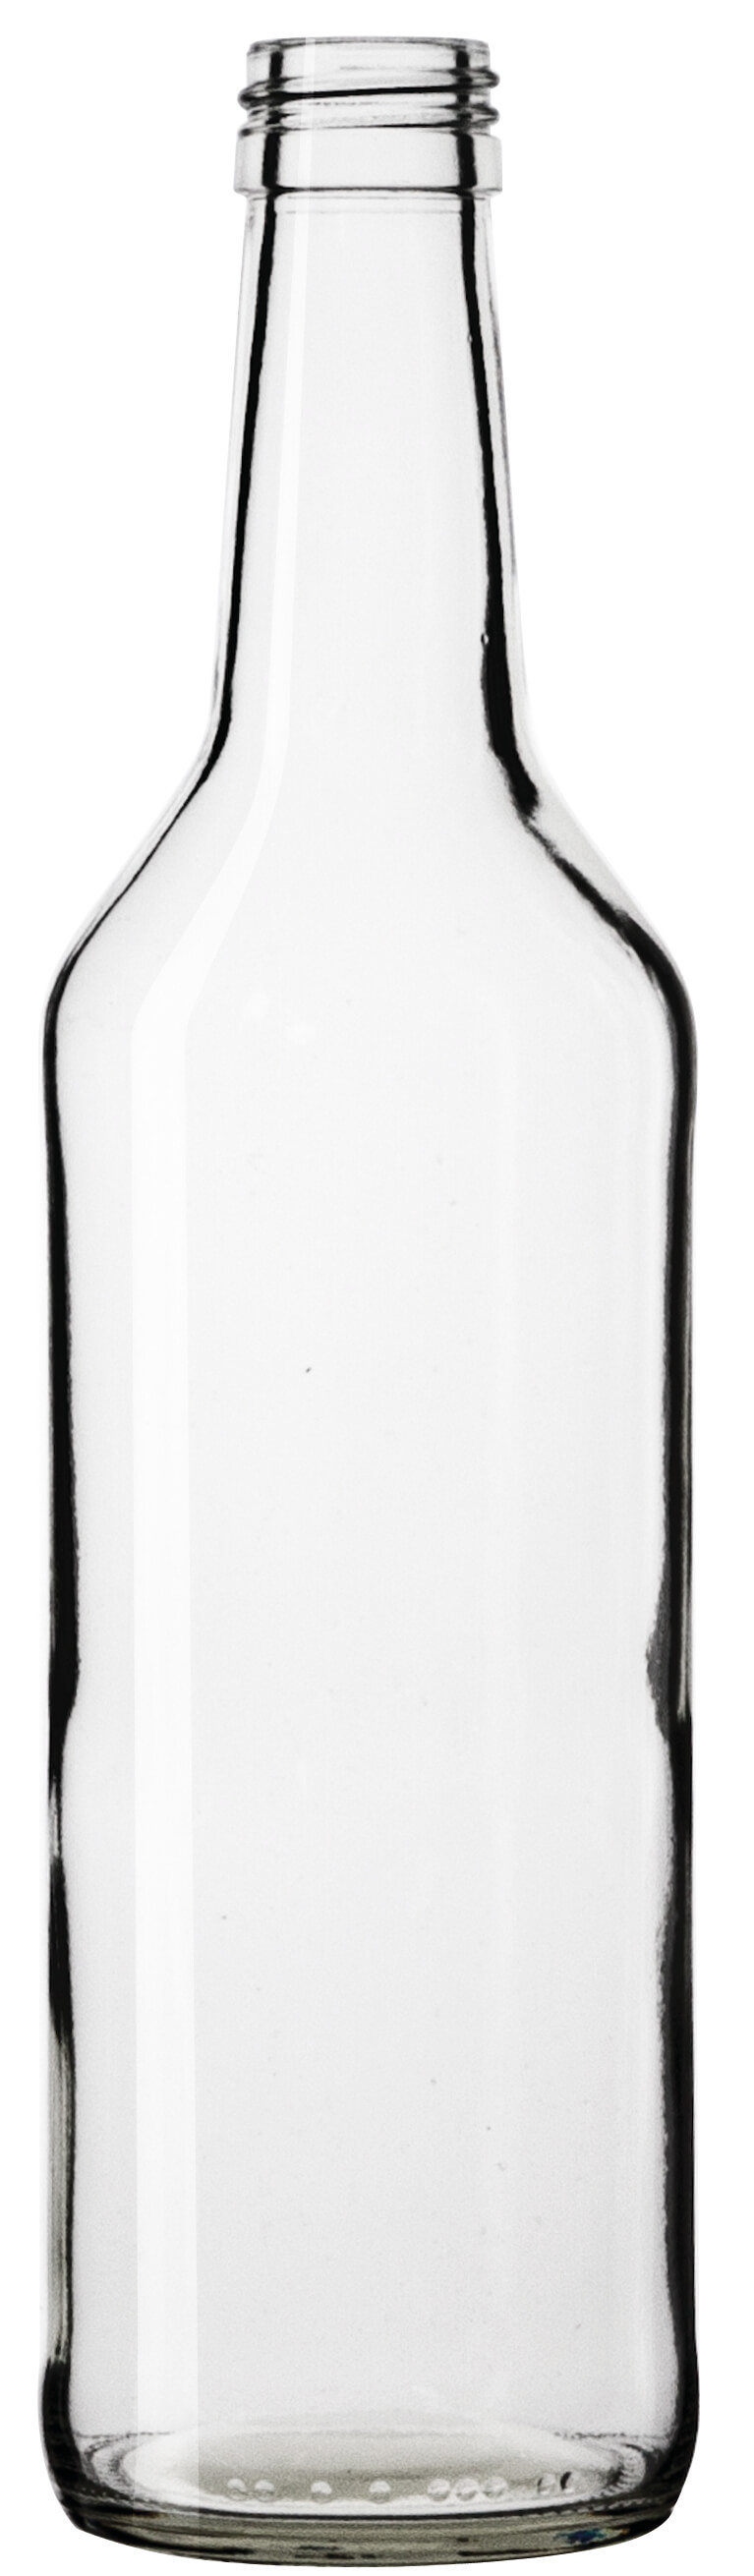 Glasflasche Geradhals klar - 500ml